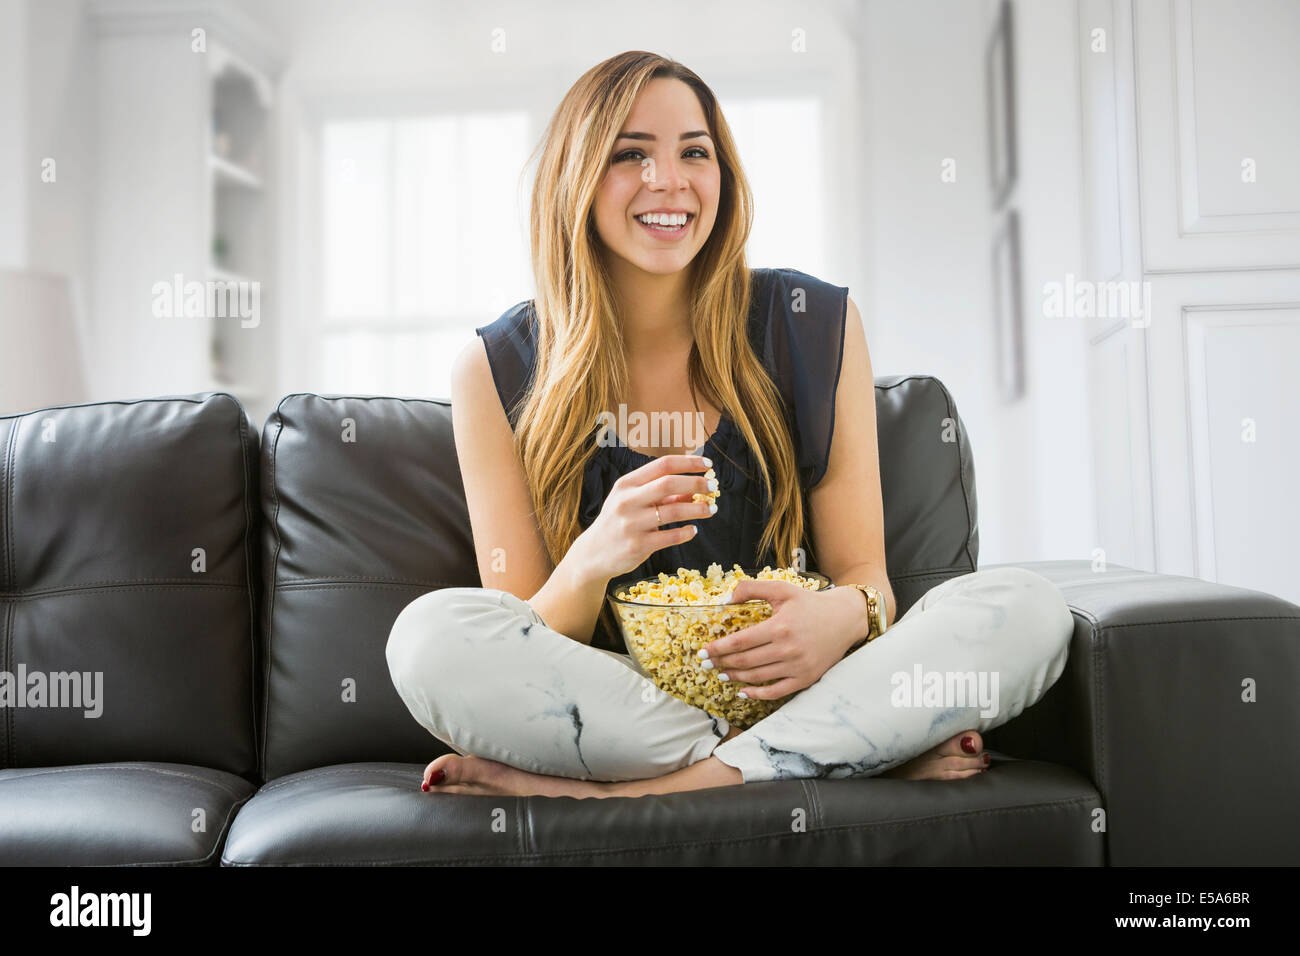 Razza mista donna di guardare la televisione sul divano Foto Stock